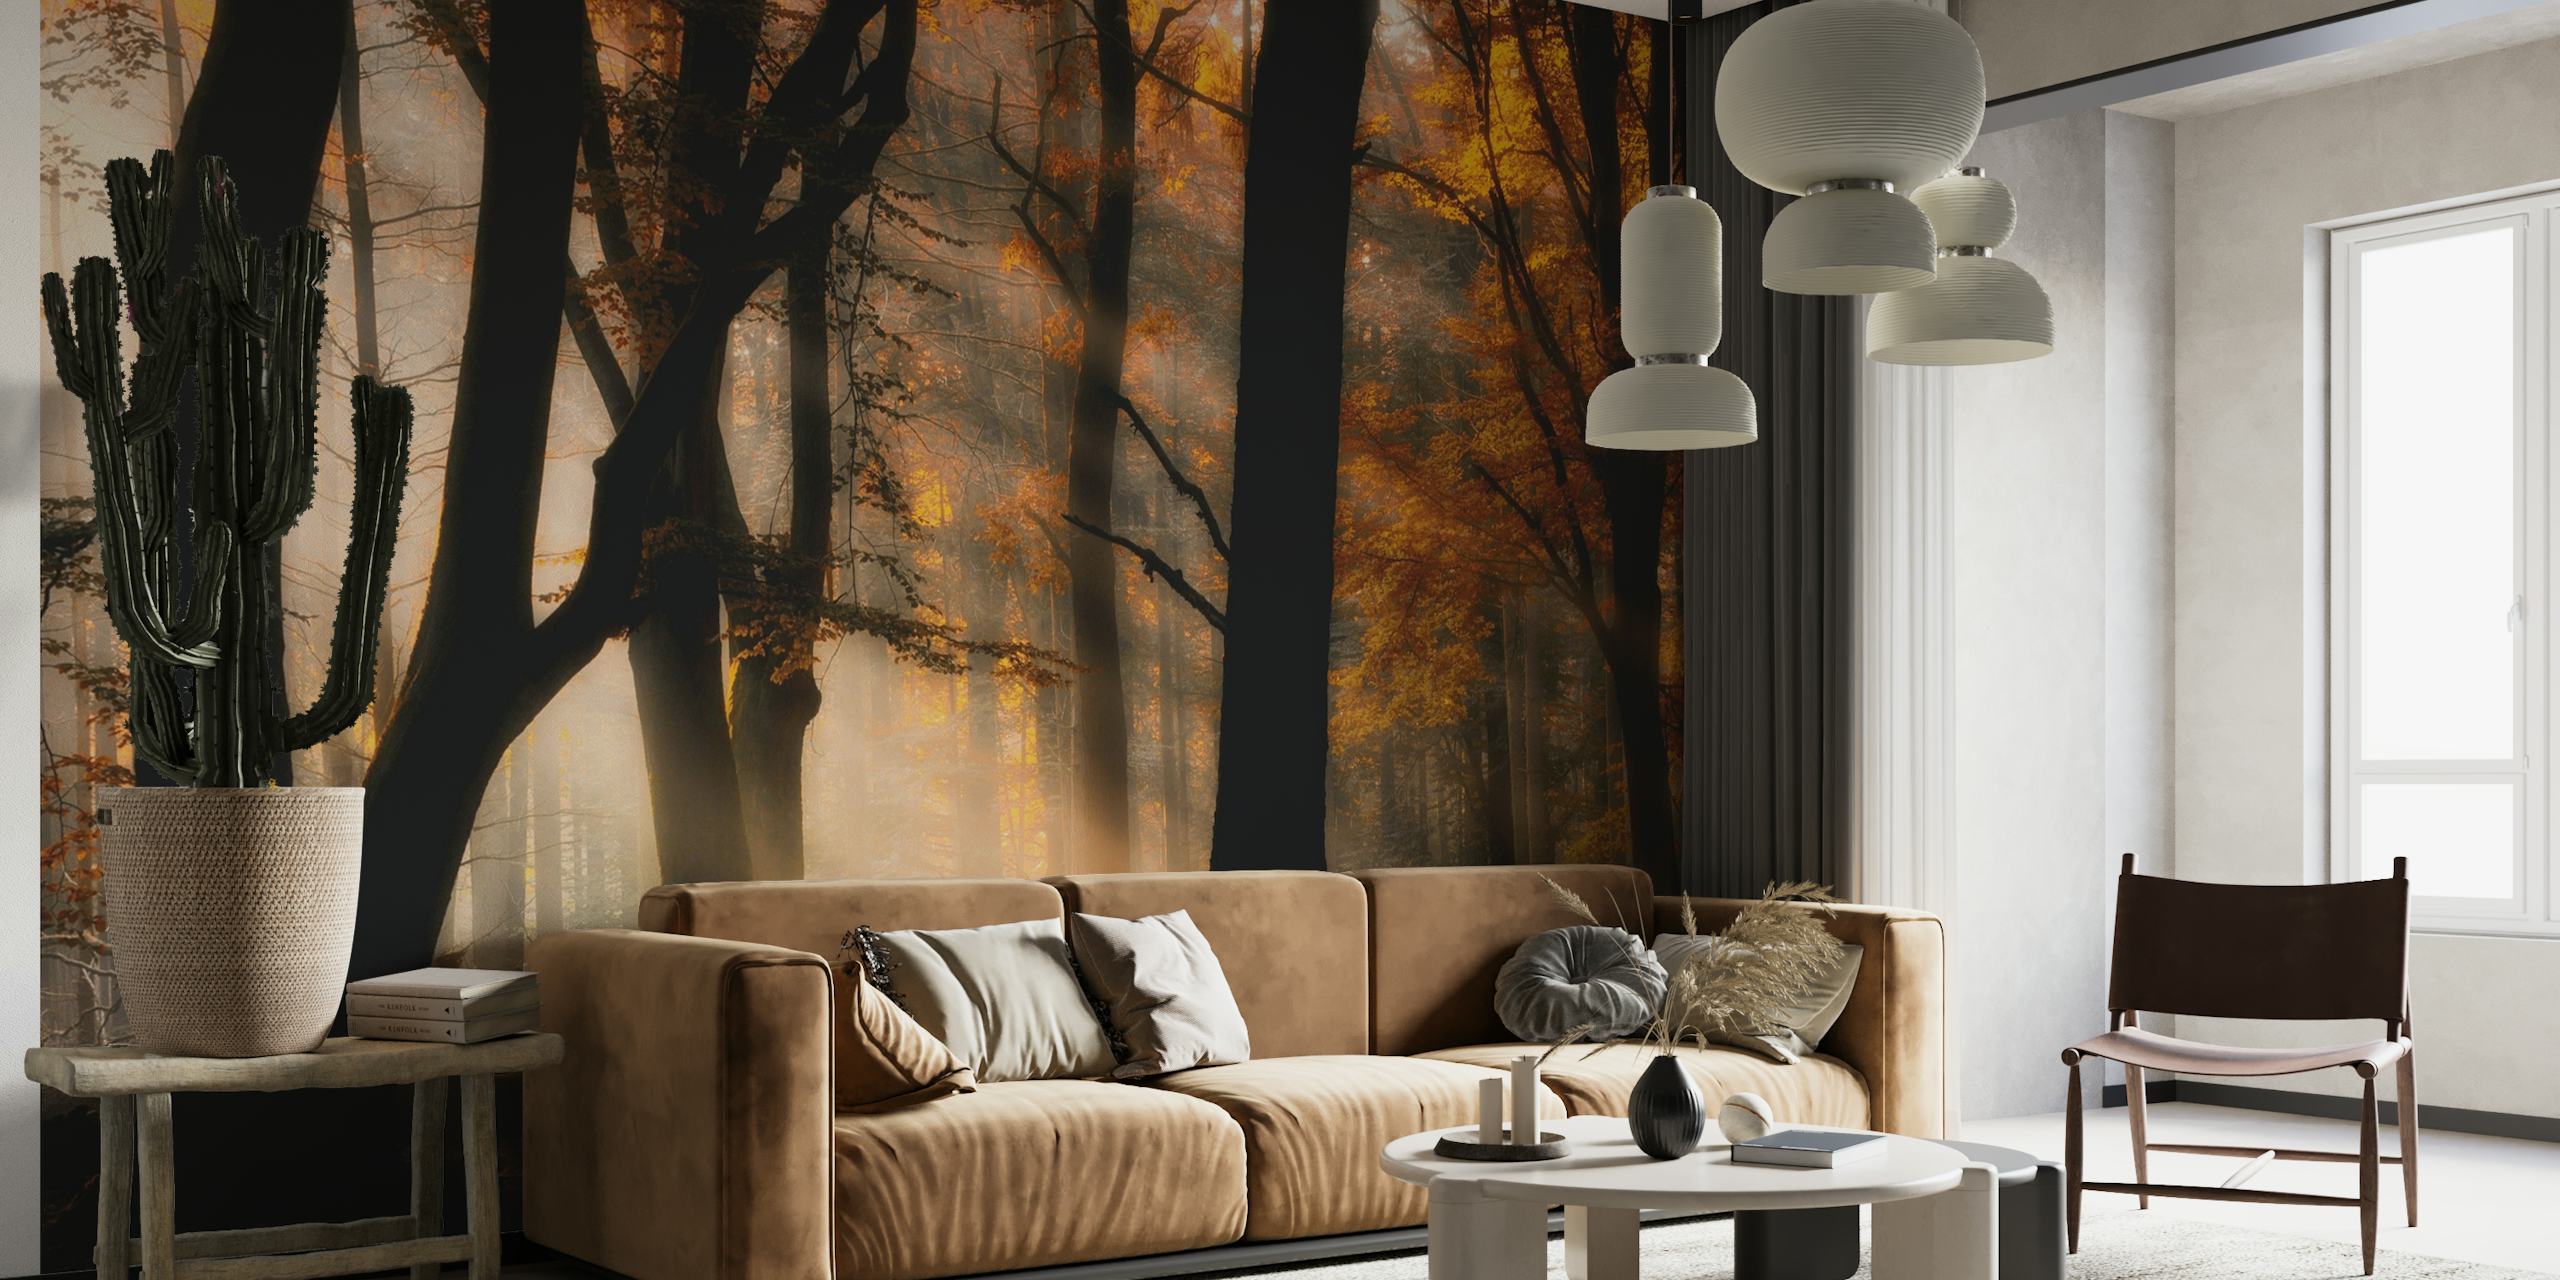 Efterårets skovscene vægmaleri med sollys, der filtrerer gennem træer